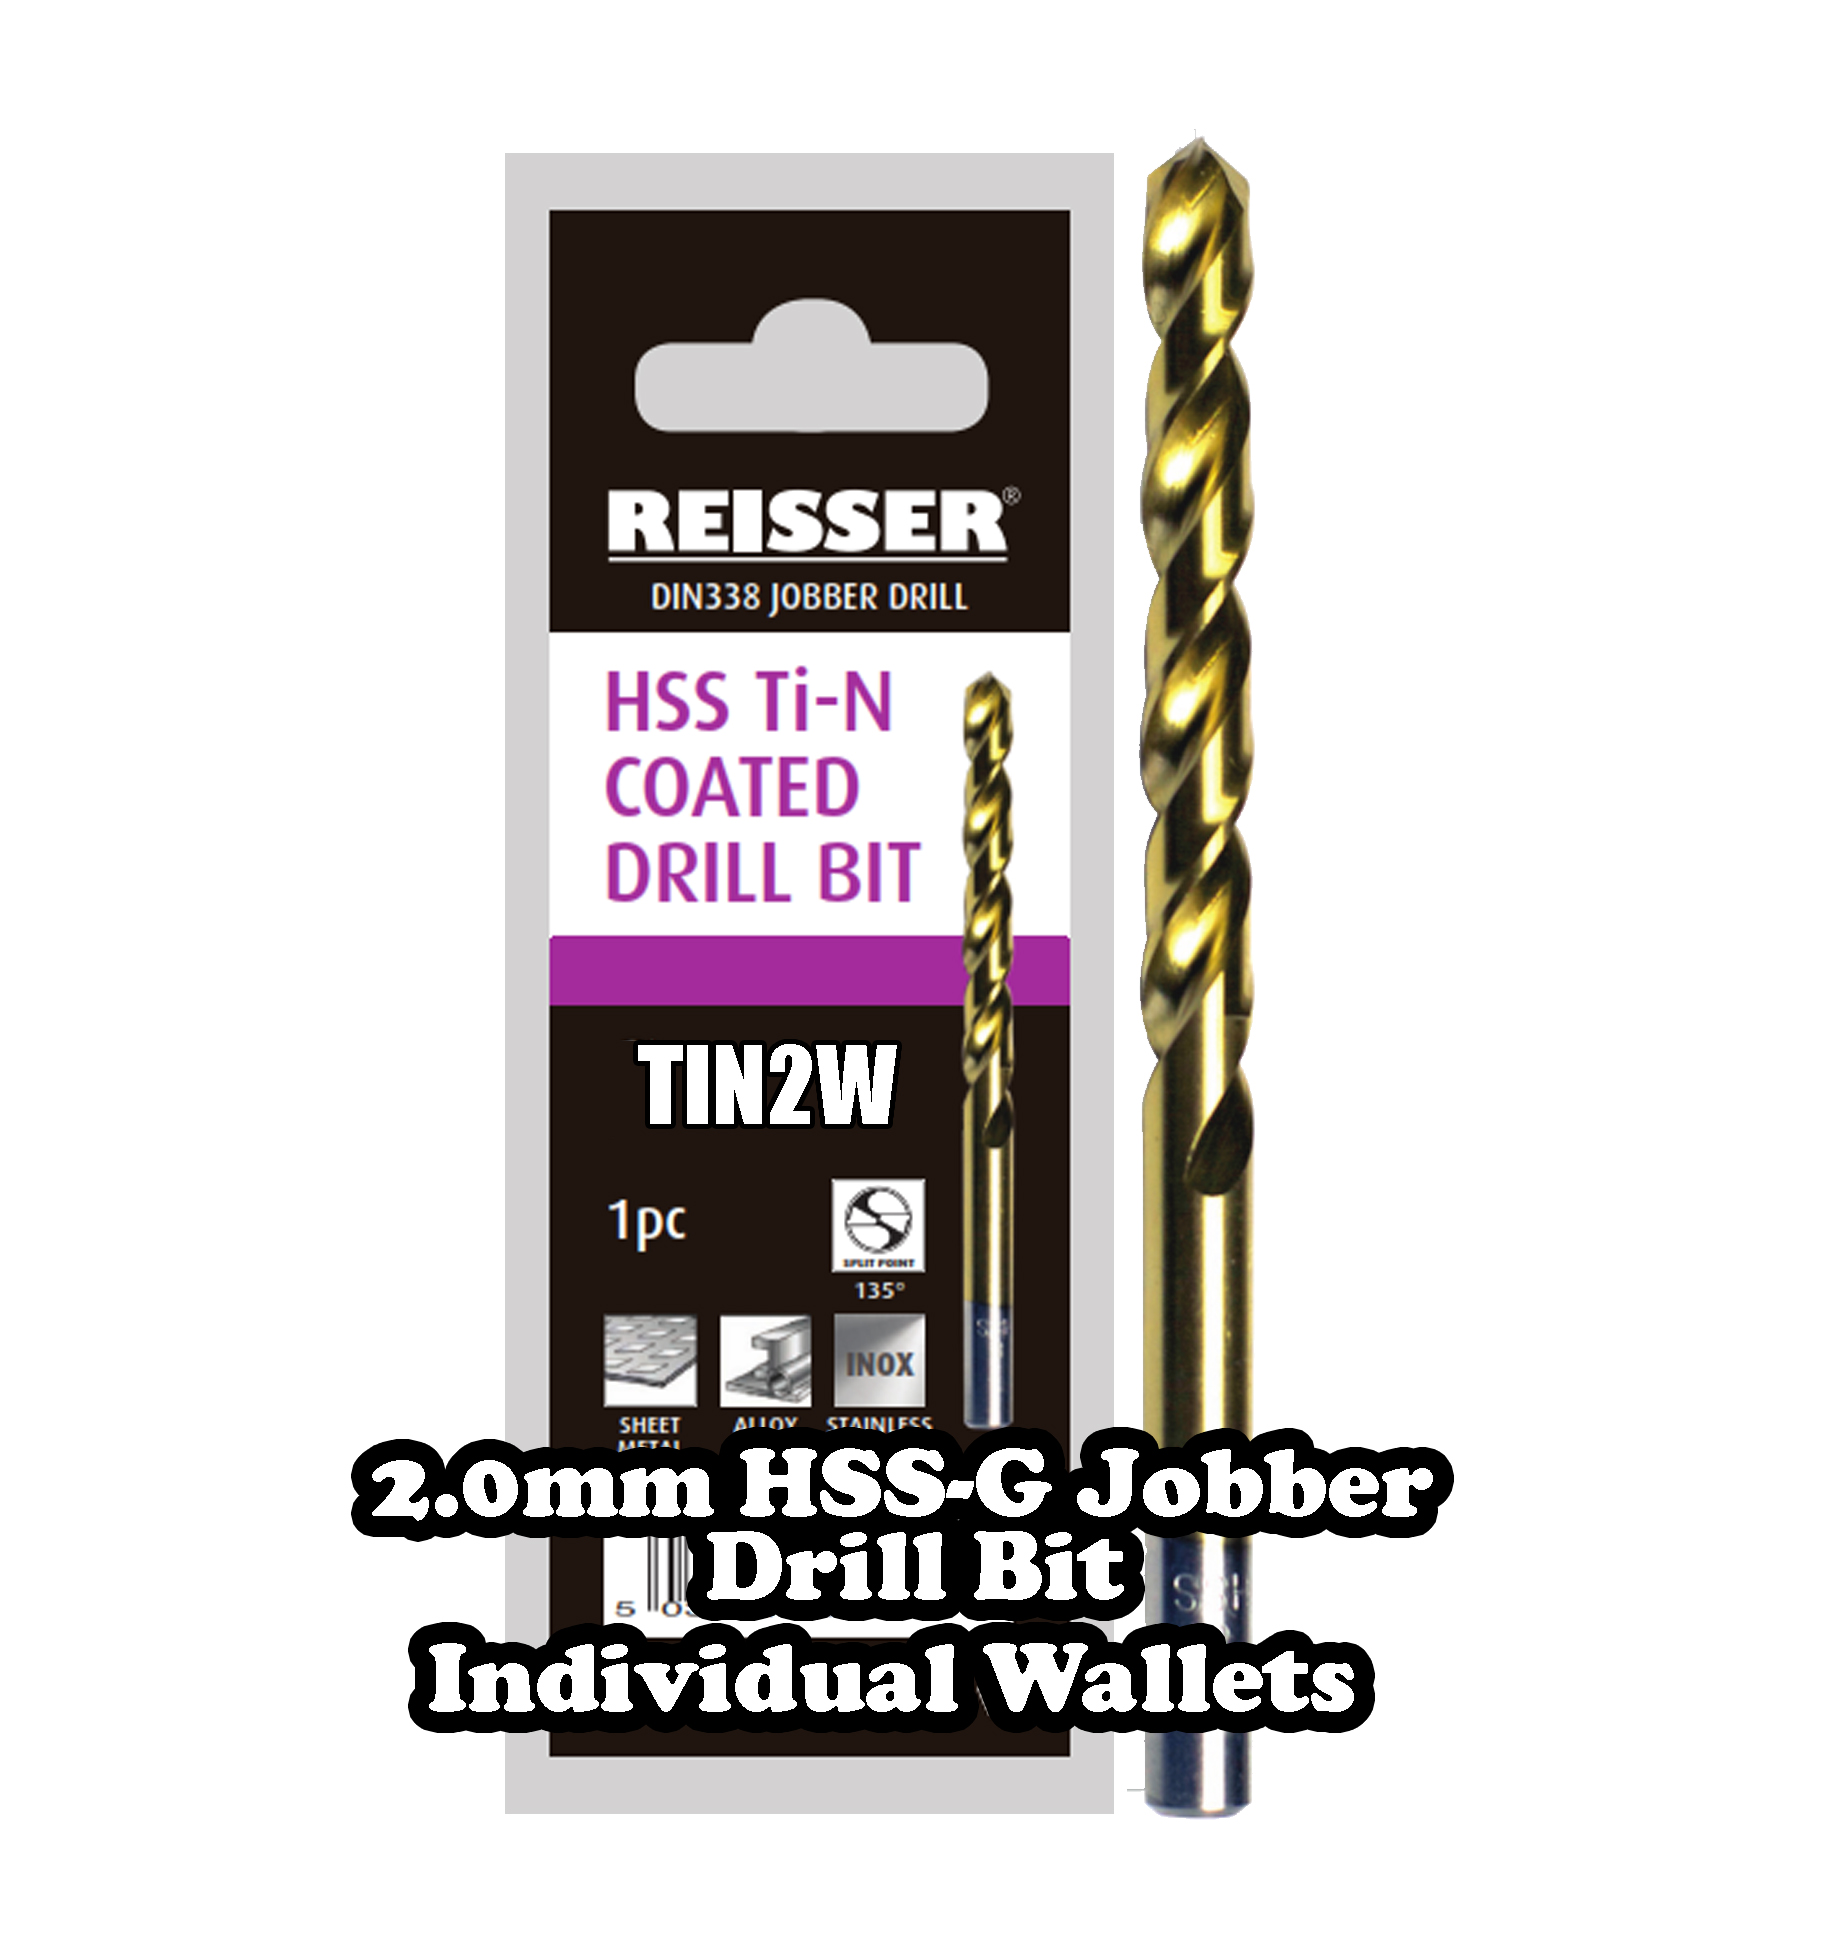 2.0mm HSS Jobber Drill Bit ( SINGLE WALLET )